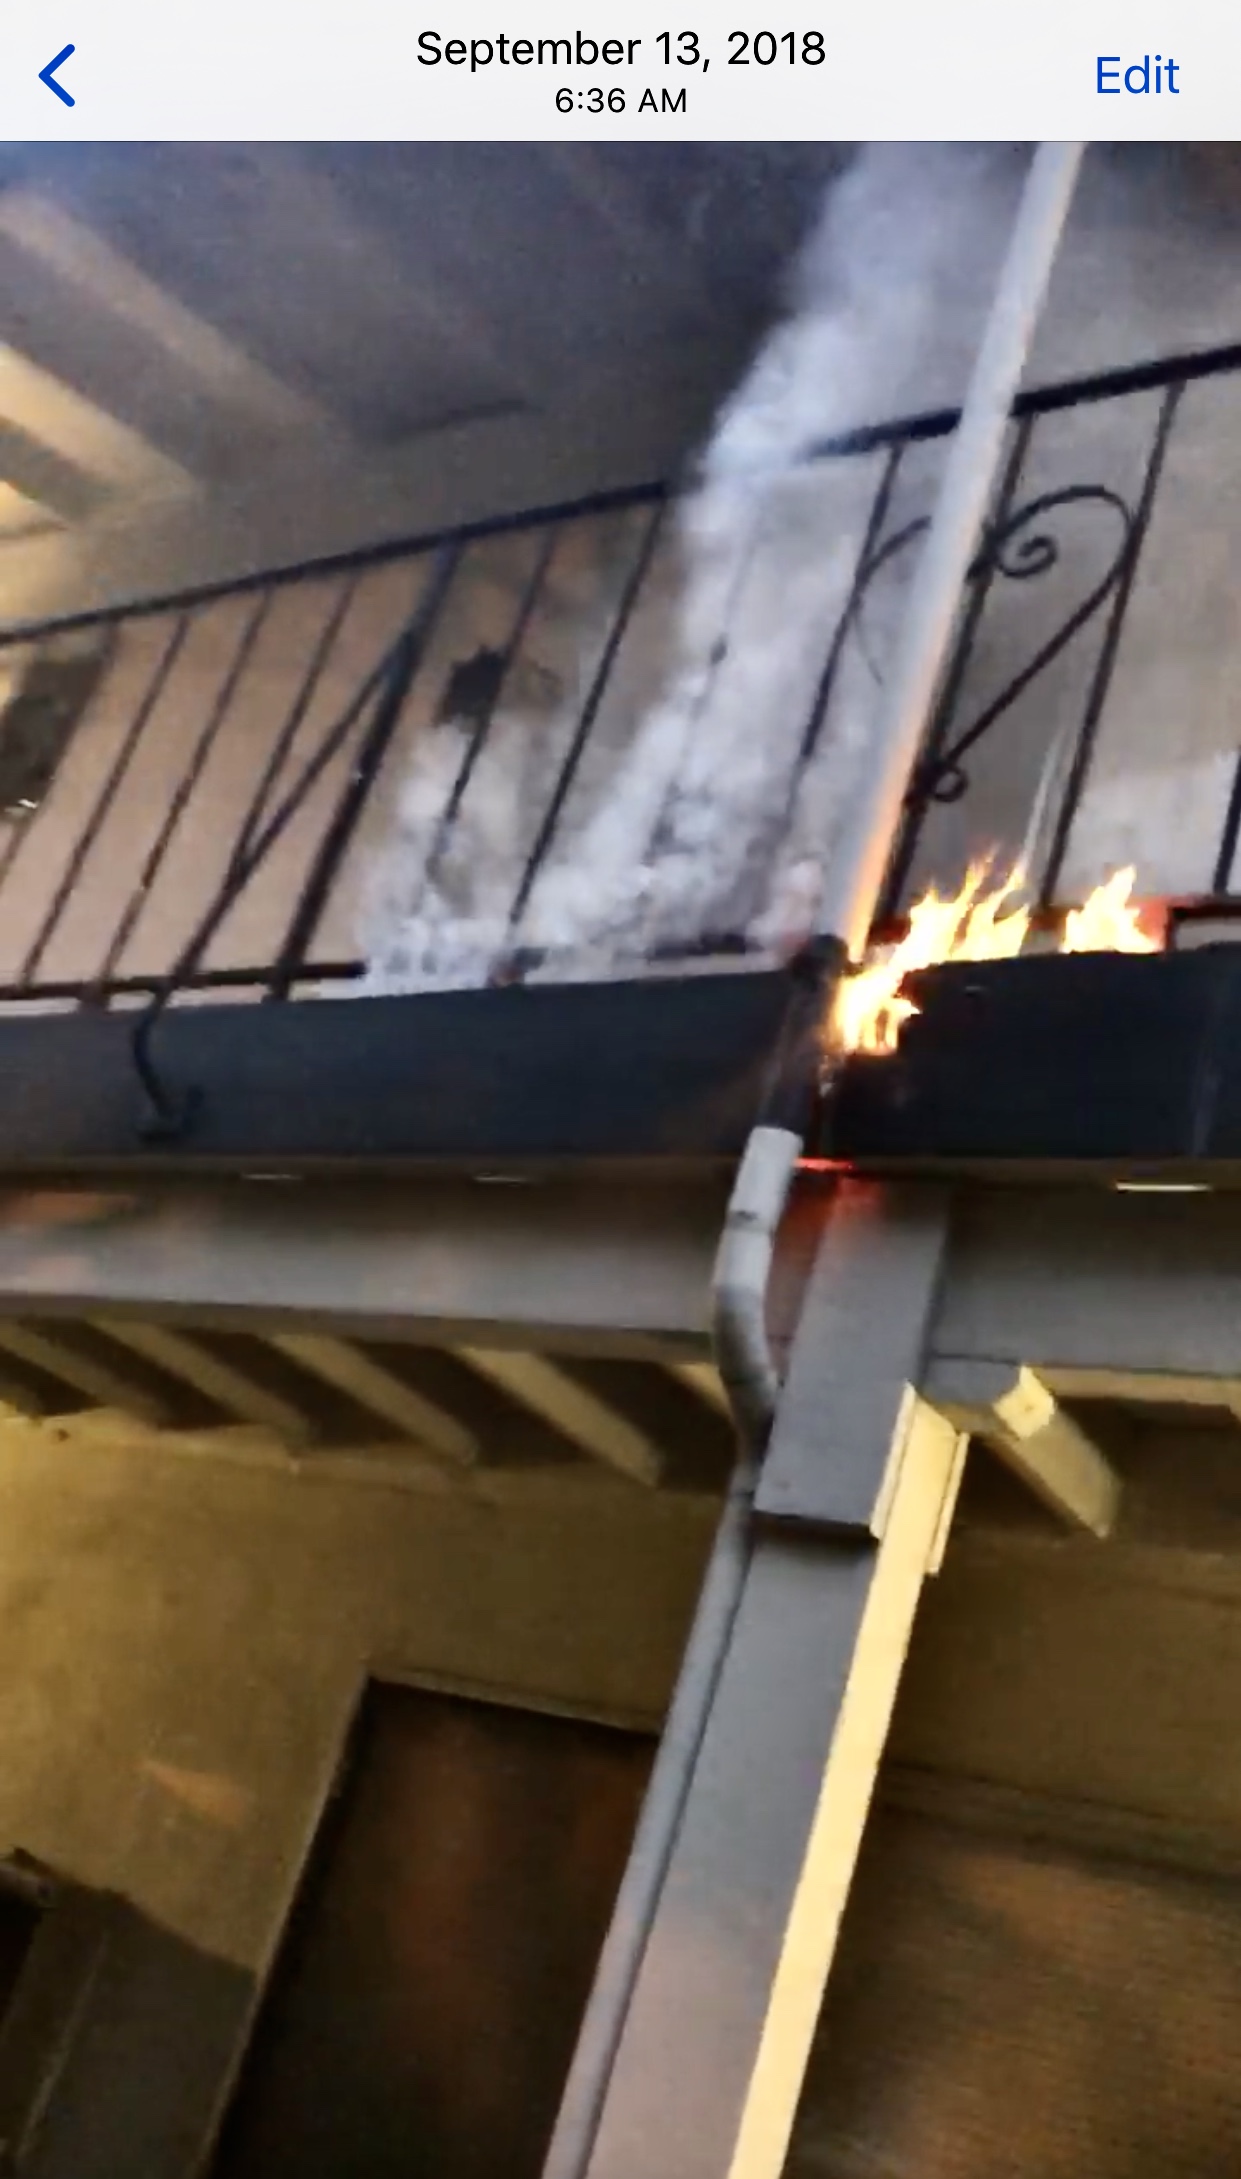 PORCH FIRE VID LANDLORD AL RAGONESI SEPTEMBER 2018